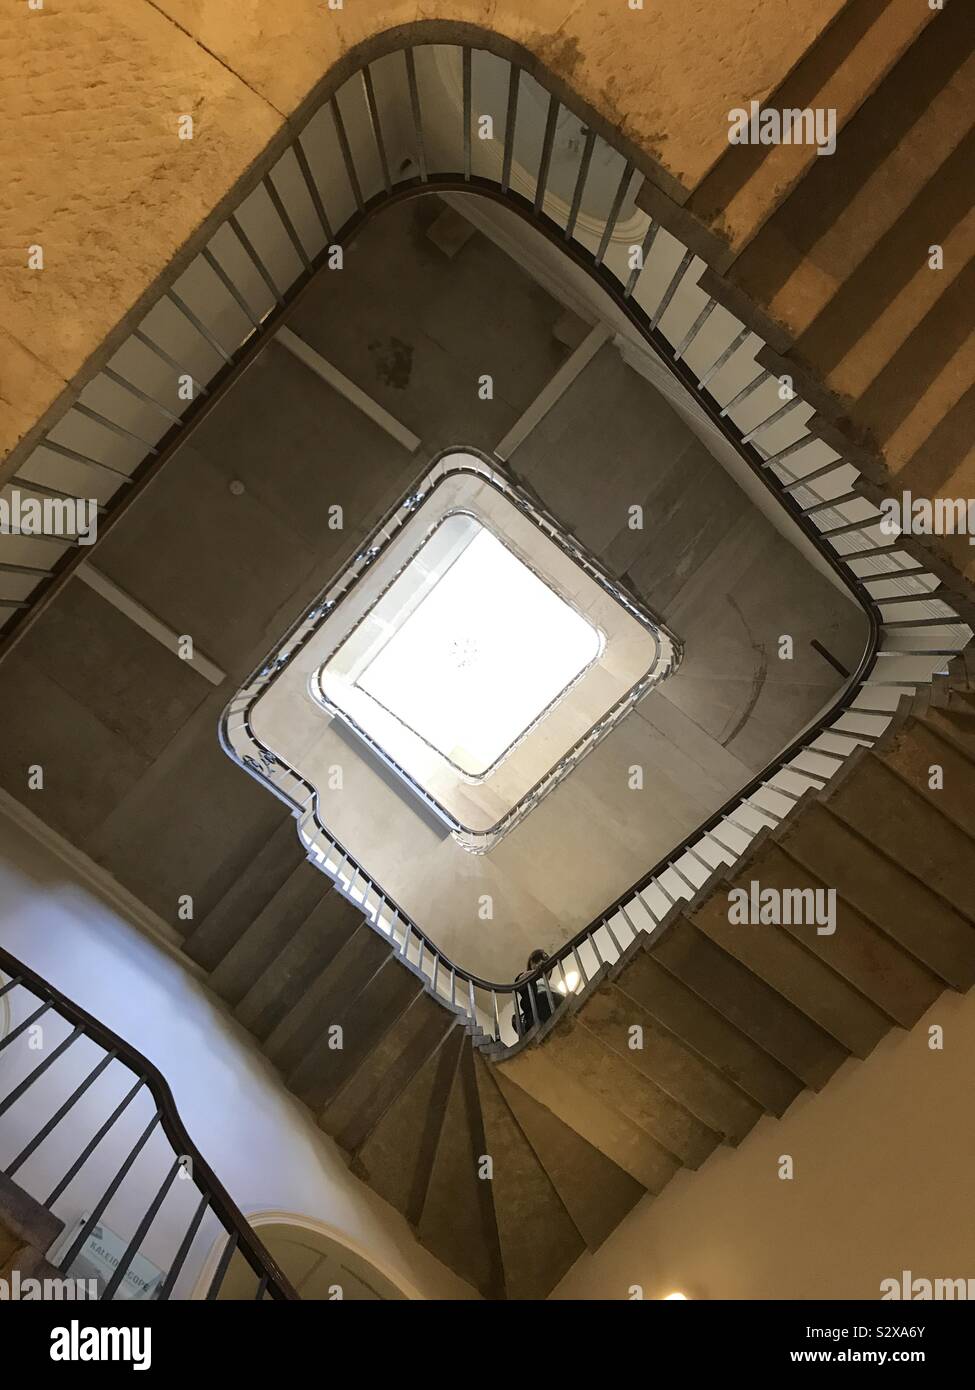 Una serpenteante escalera vista desde abajo. Foto de stock